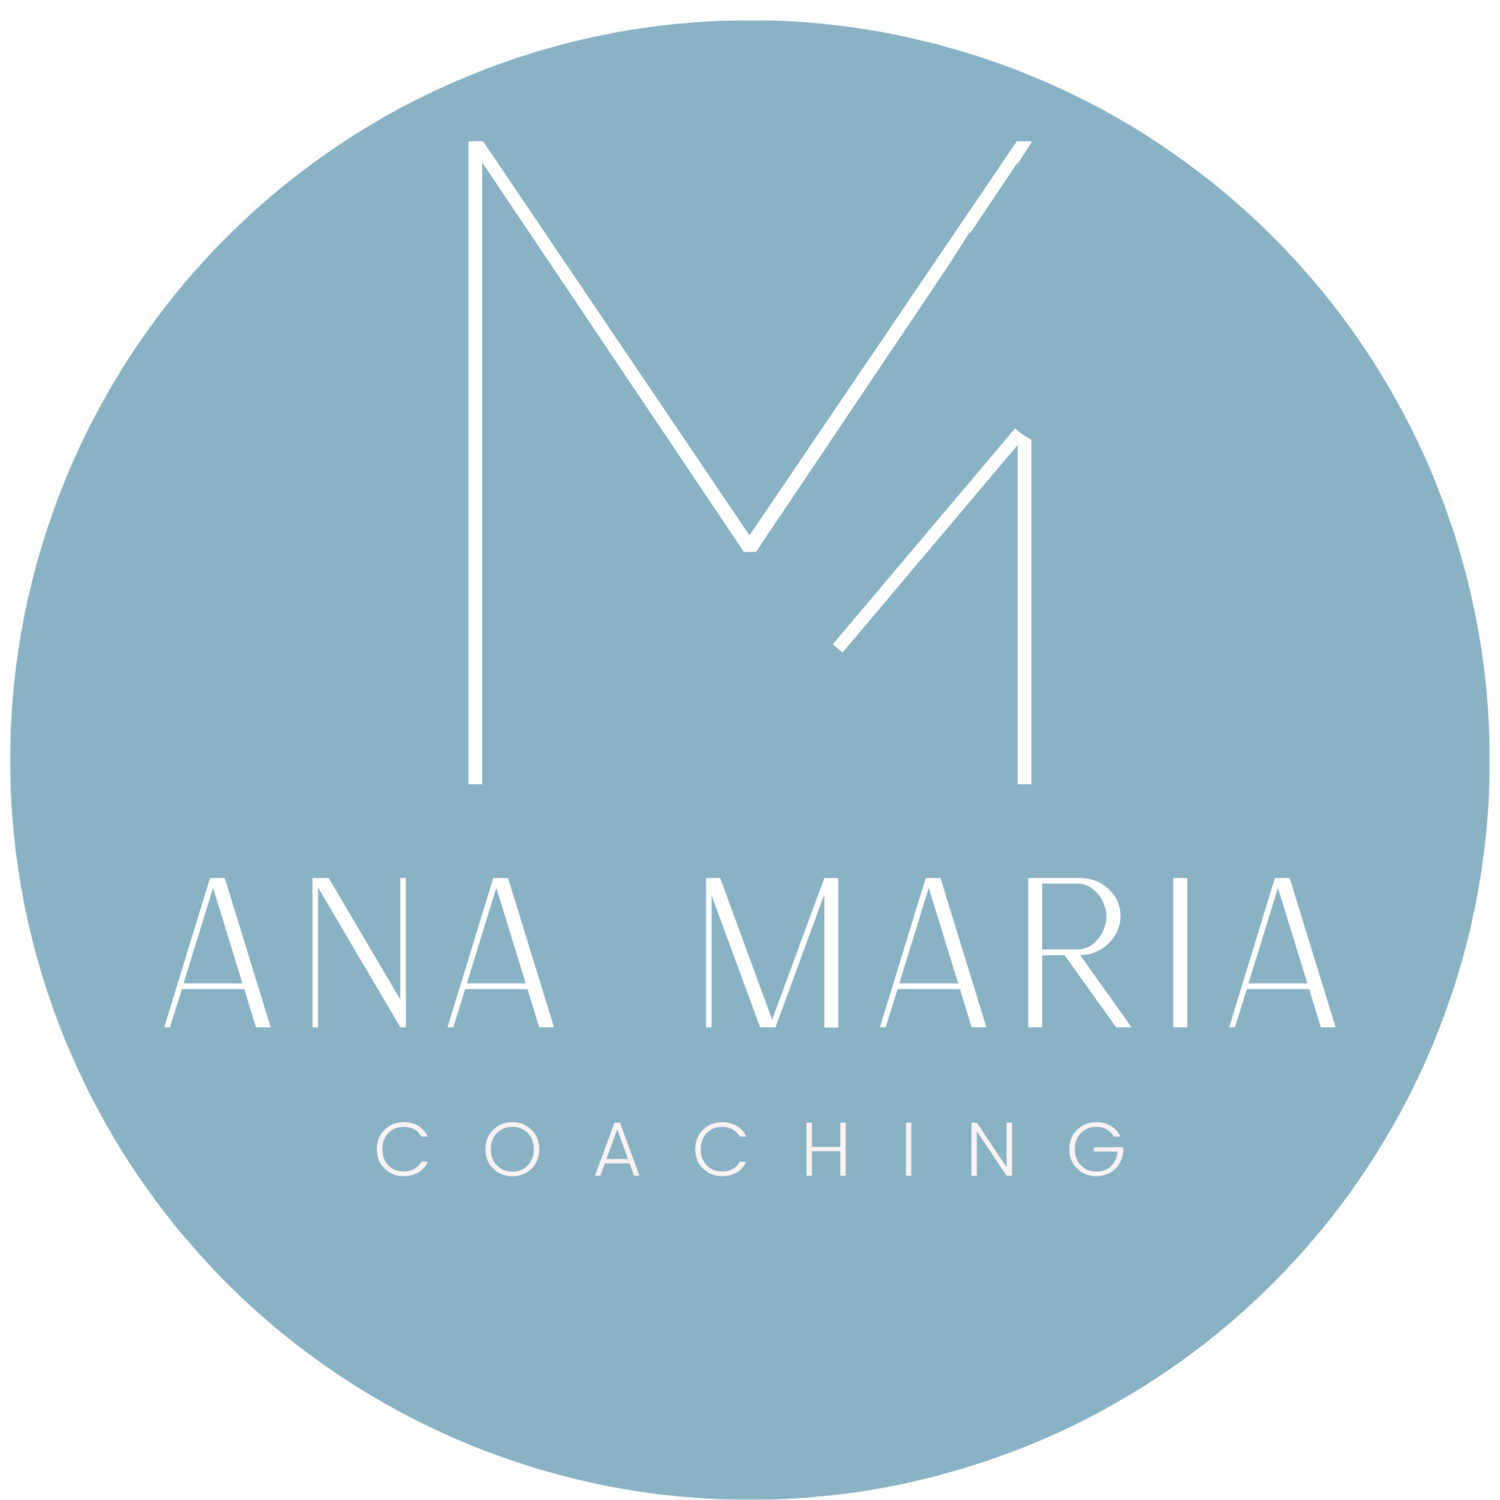 Ana Maria Coaching